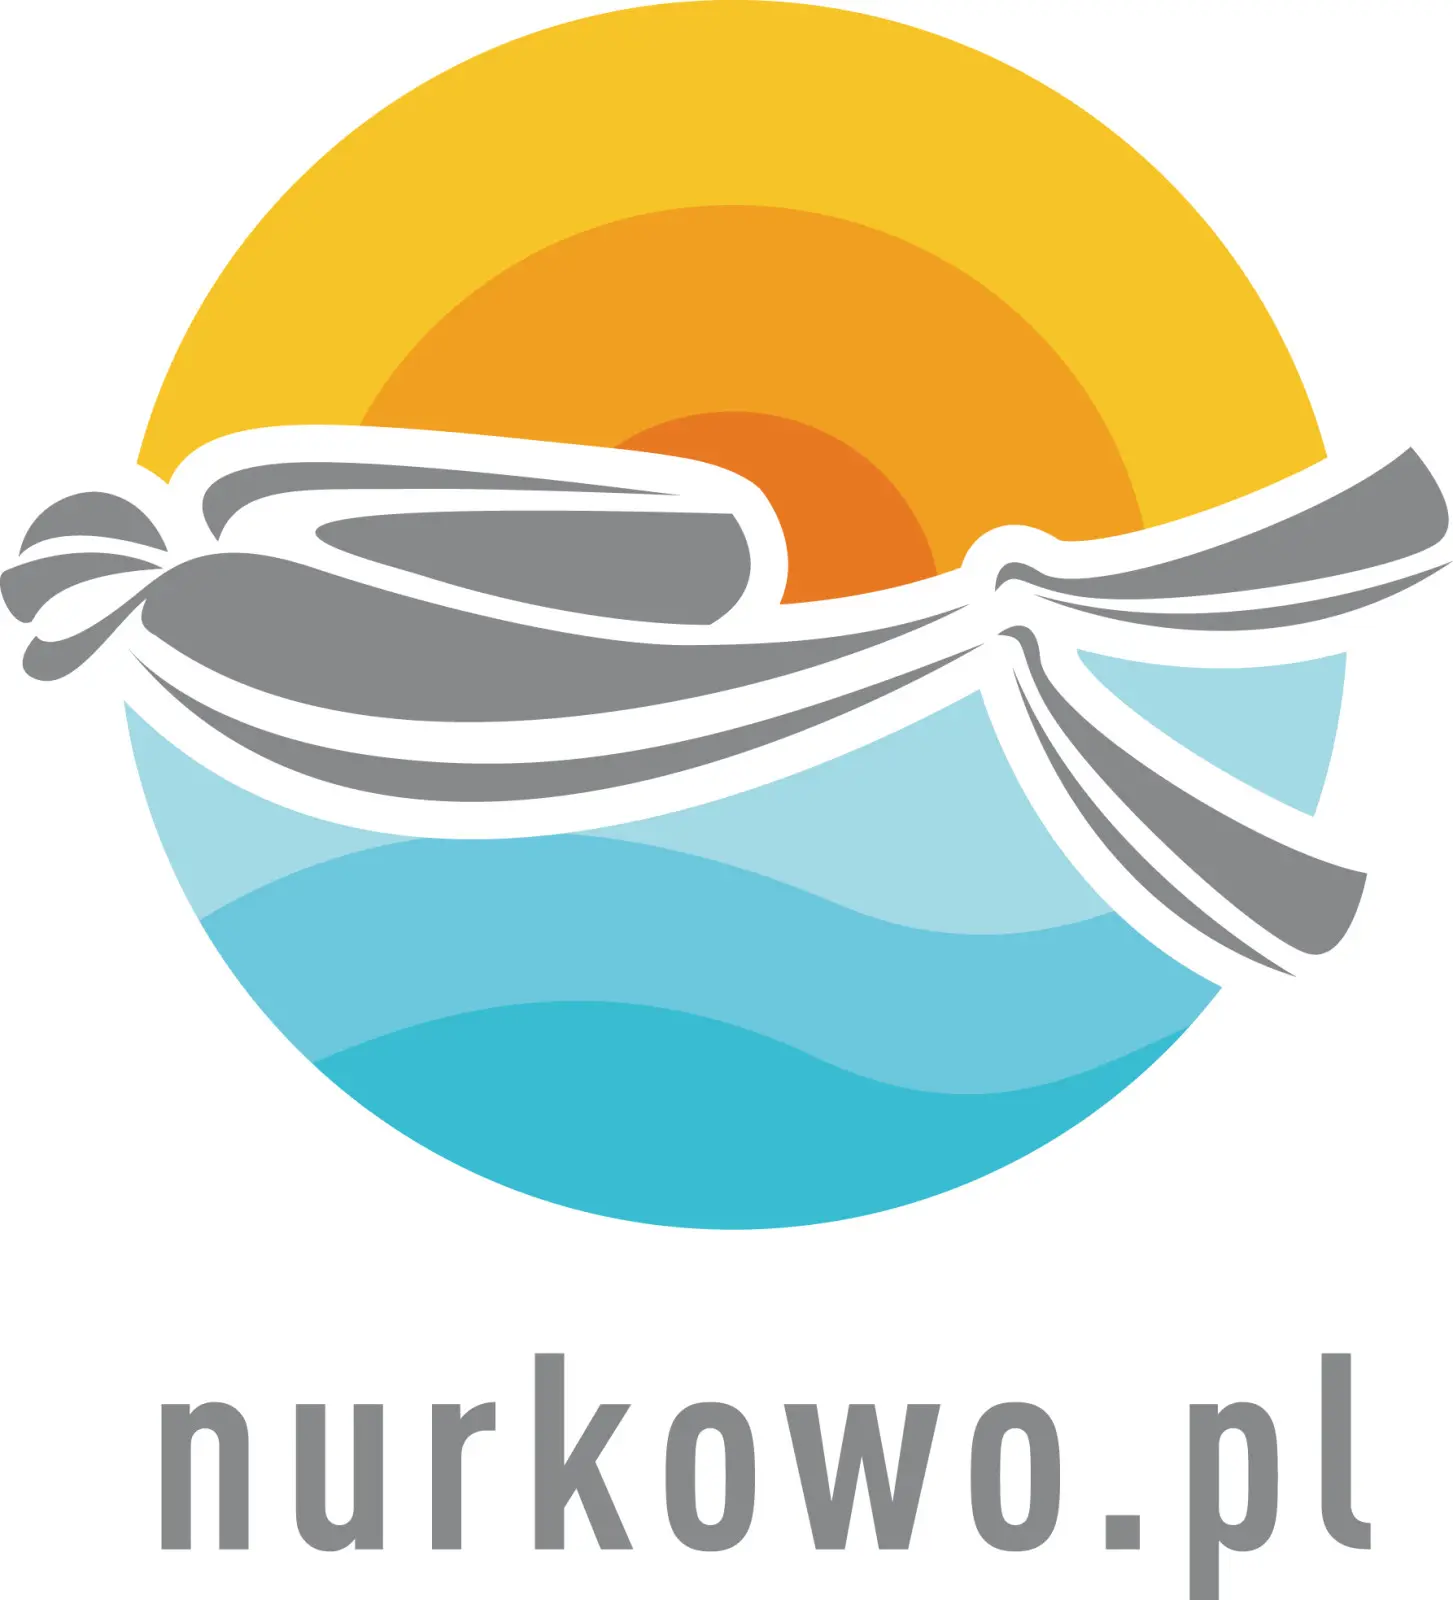 Nurkowo.pl